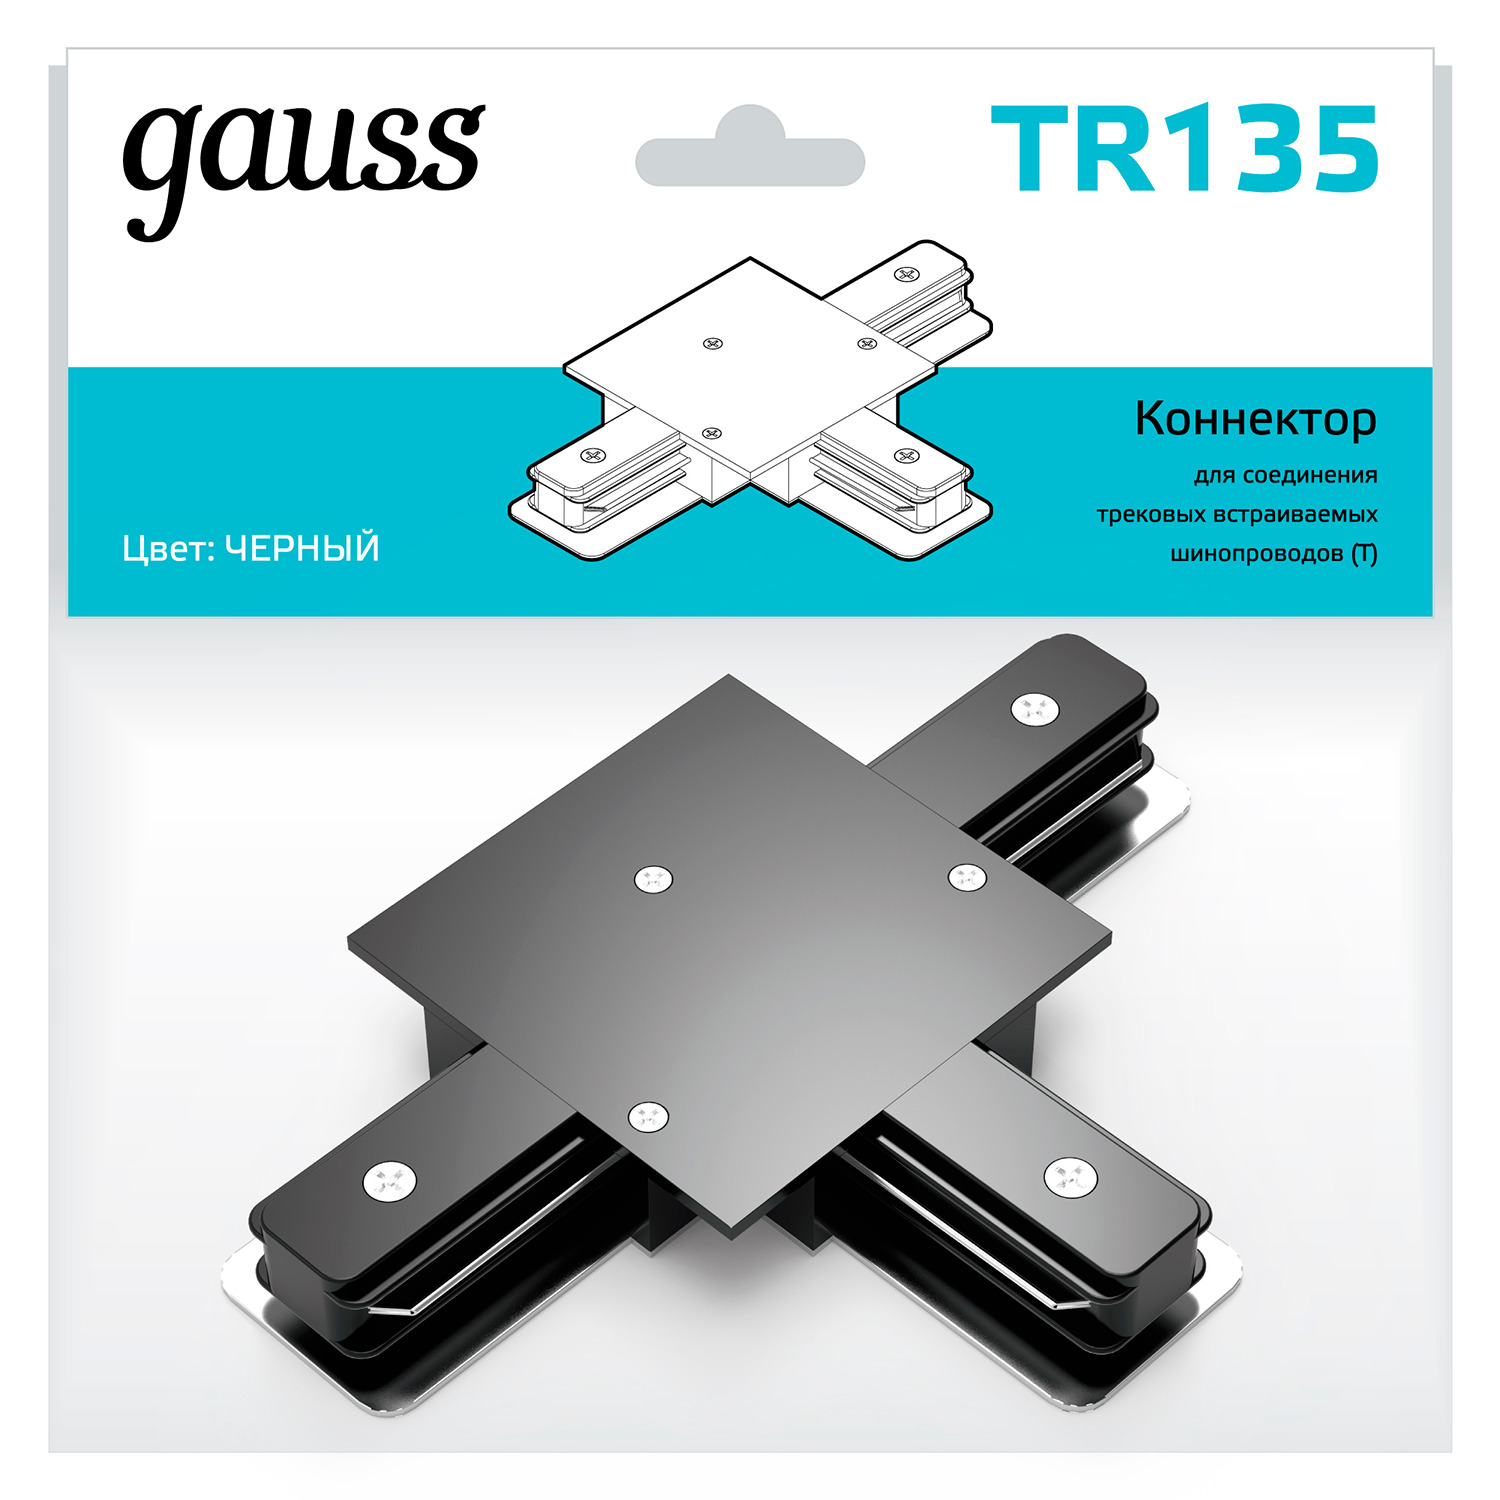 Коннектор Gauss для встраиваемых трековых шинопроводов (T) черный коннектор gauss для трековых шинопроводов t